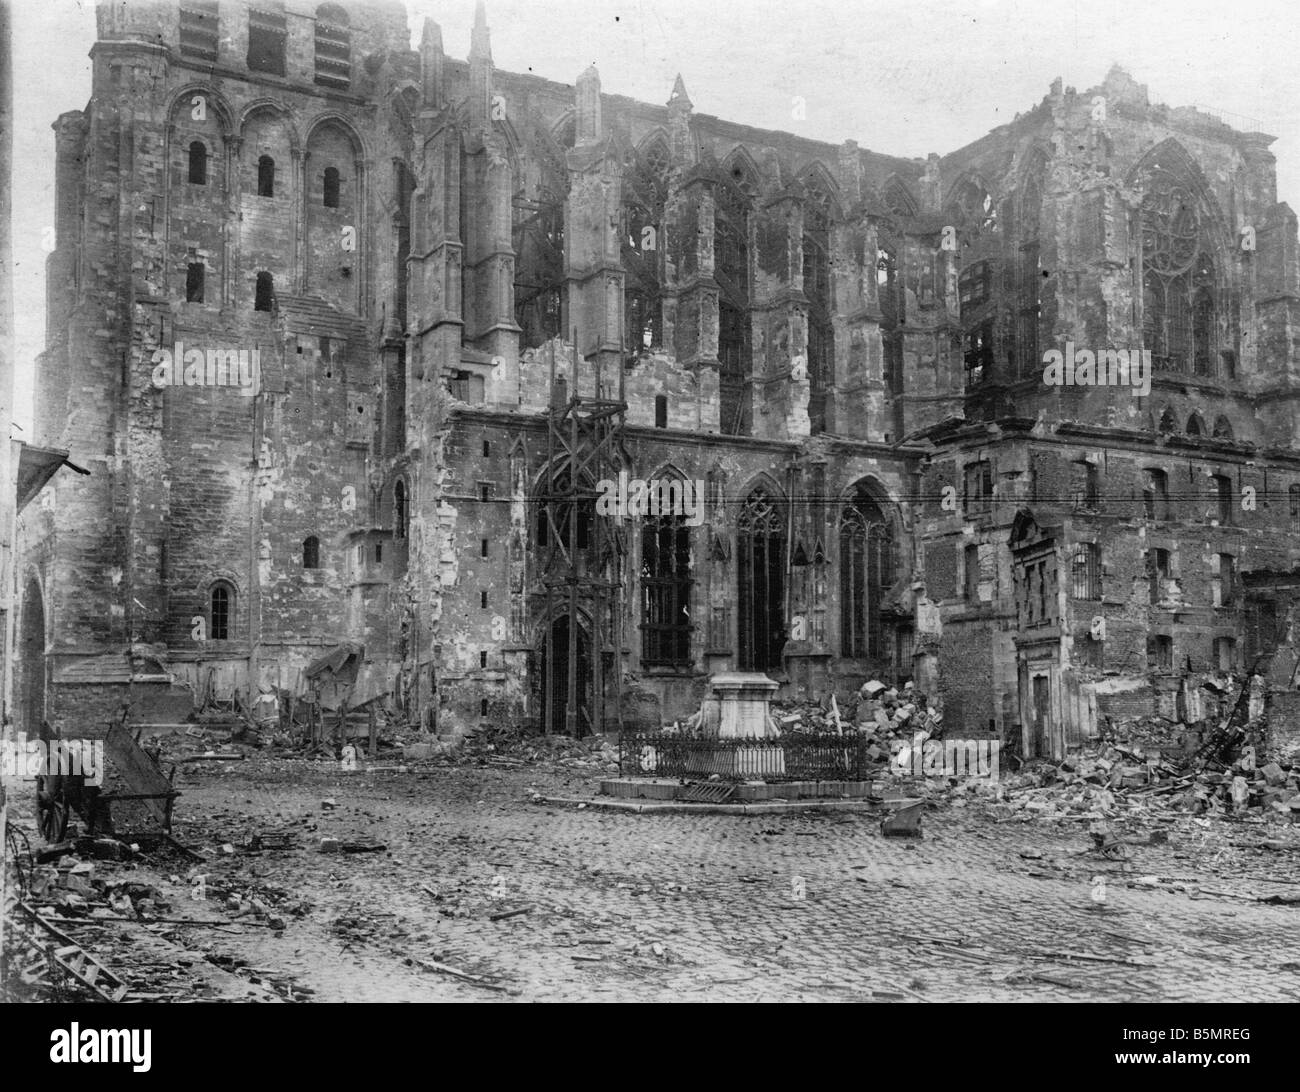 9 1917 11 20 A2 23 WW1 Battaglia di Cambrai distruzione Guerra Mondiale 1 1914 18 Francia Battaglia di Cambrai XX 29 11 1917 Offensiva del Foto Stock